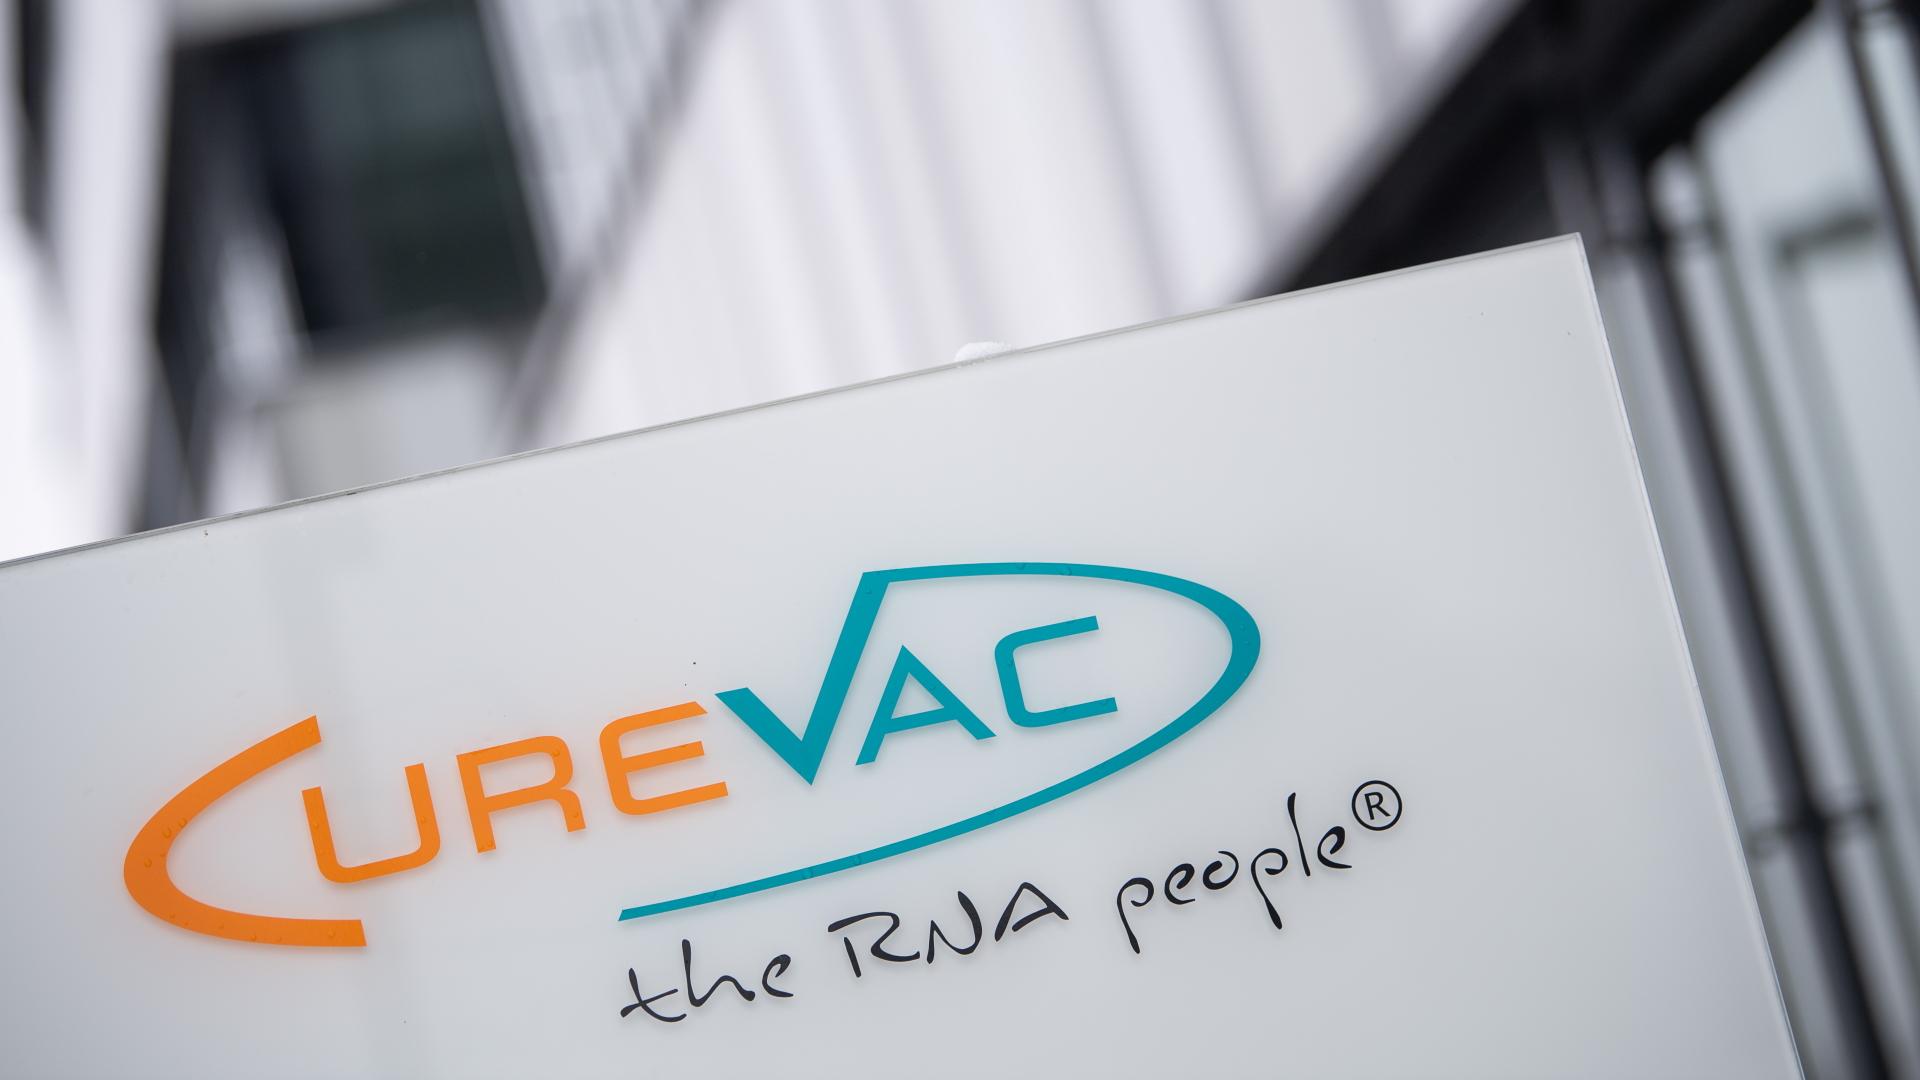 Das Logo des Unternehmens CureVac mit dem Slogan "the RNA people" steht an der Unternehmenszentrale. | dpa